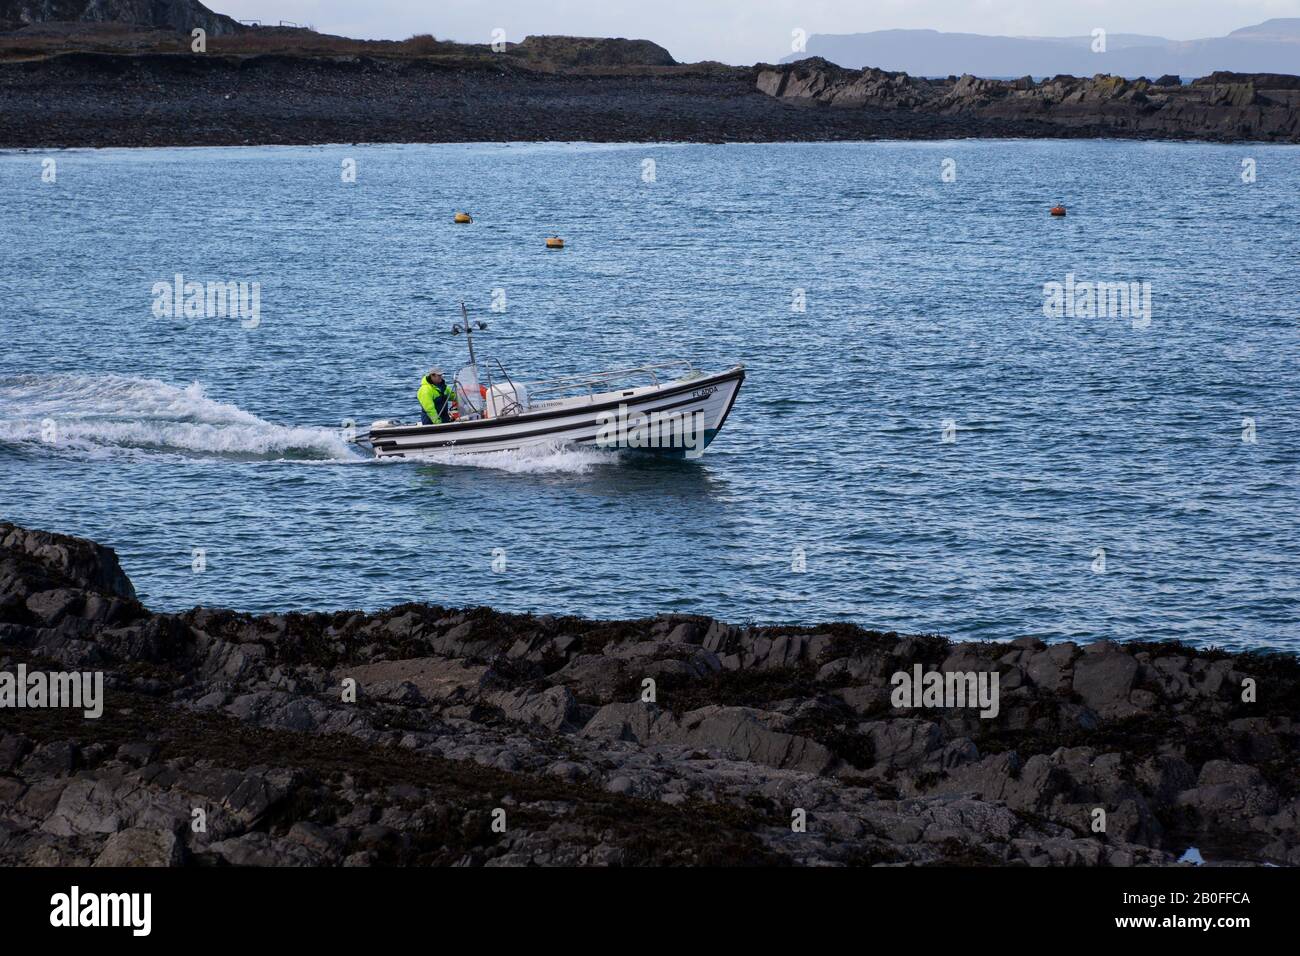 Imbarcazione da pesca di medie dimensioni in legno chiamata Fladda con un membro dell'equipaggio azionato da un motore fuoribordo nella Balvicar Bay ad est dell'Isola di Siel nella Scozia occidentale. Foto Stock